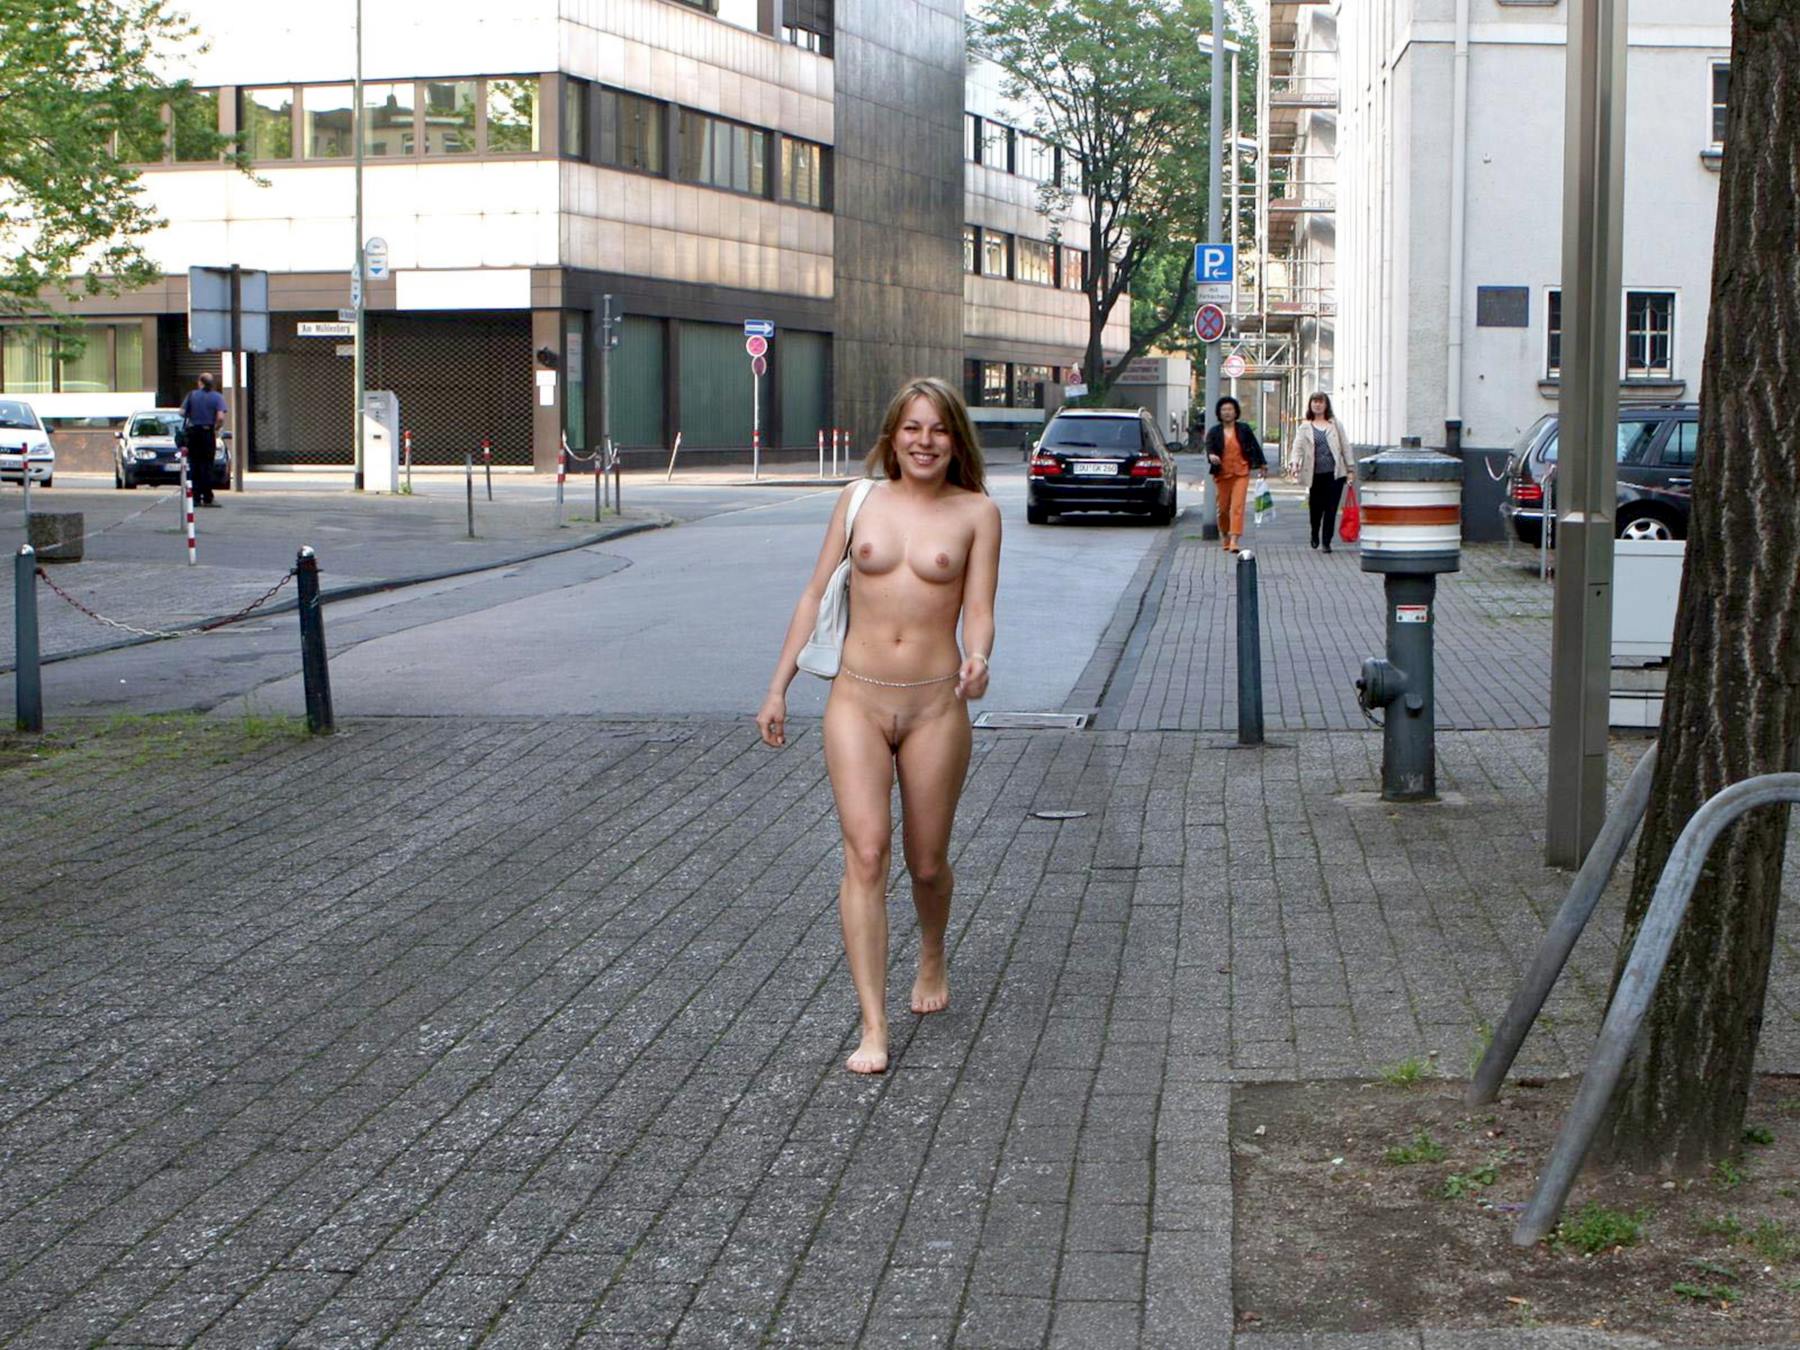 Caught naked outside - 🧡 nackte Spaziergängerin 57 - FKK Bilder und Fotos.